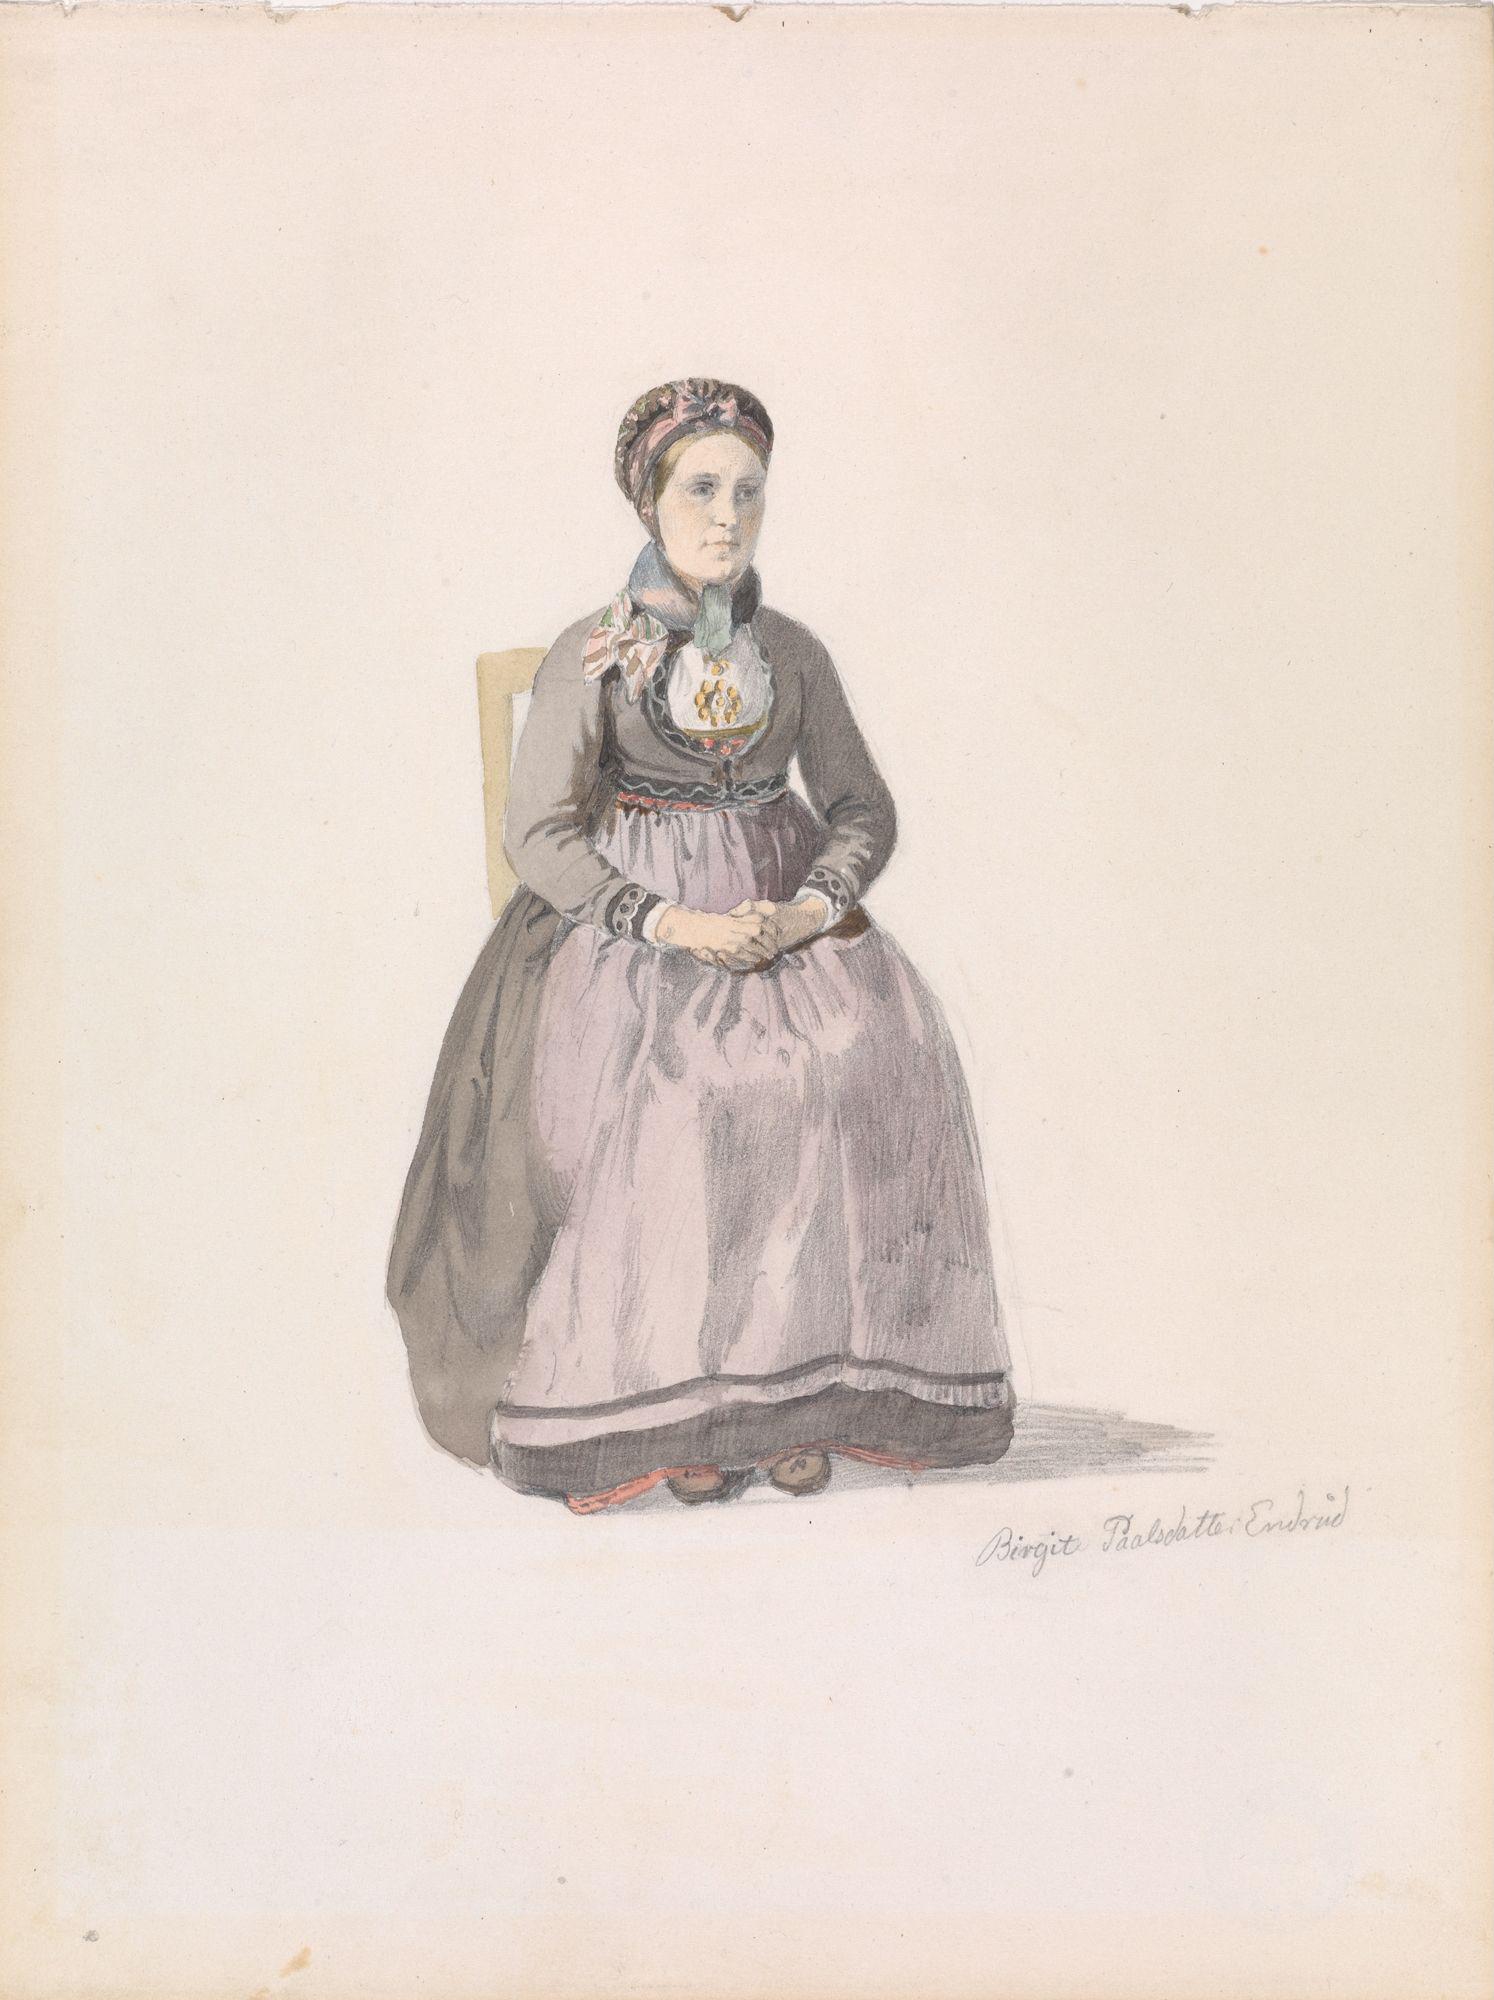 Birgit Pålsdatter Enderud, Uvdal (Adolph Tidemand, ca. 1848) Nasjonalmuseet. Lisens: Fri bruk (Creative Commons - Attribution CC-BY)